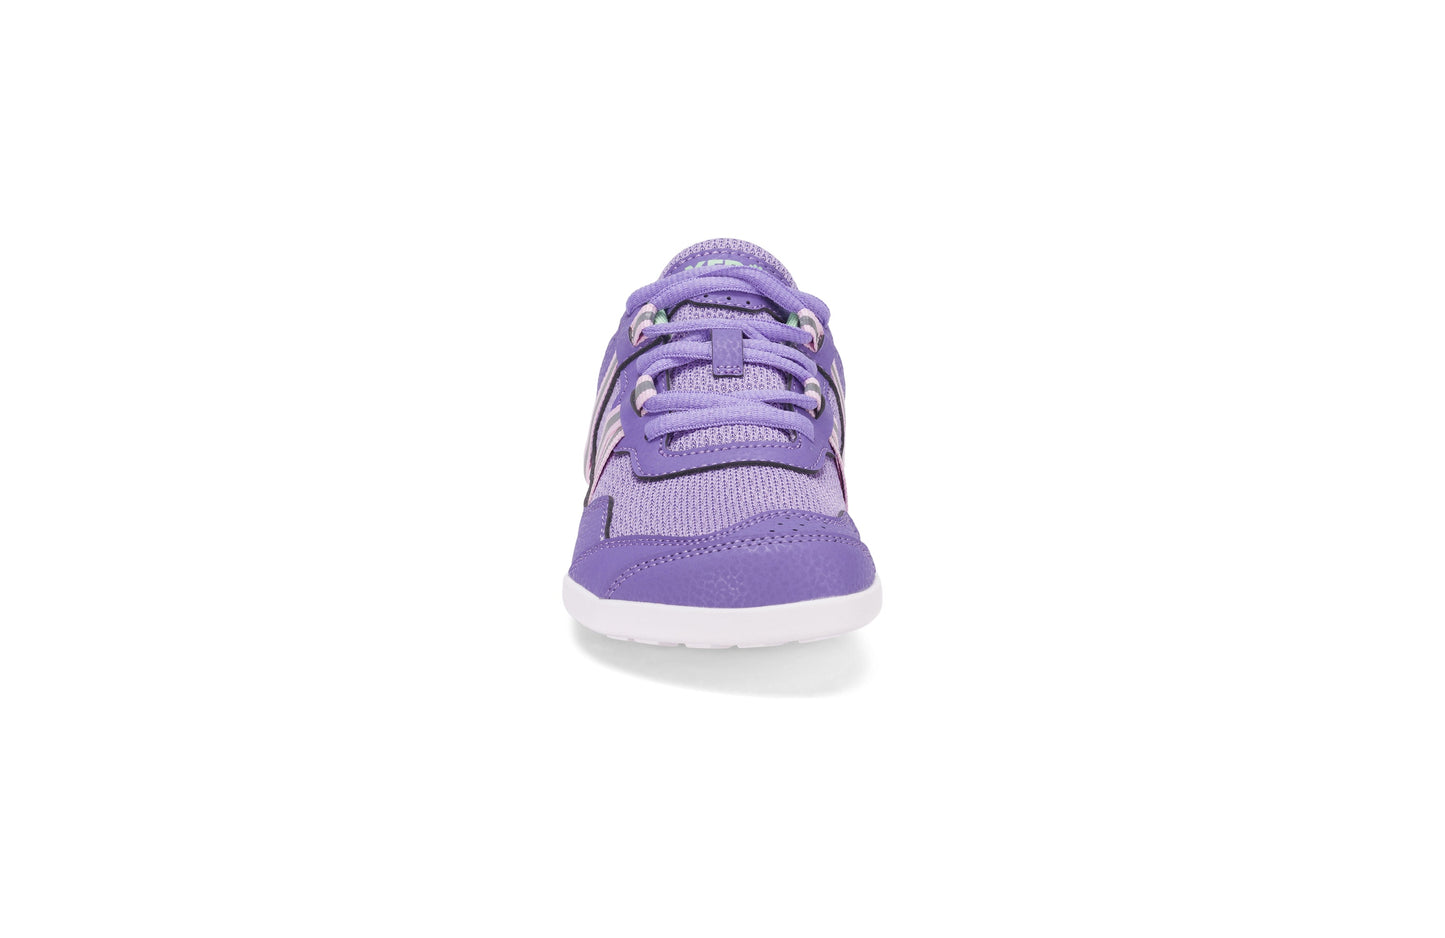 Xero Shoes Prio Kids barfods træningssko/sneakers til børn i farven lilac / pink, forfra